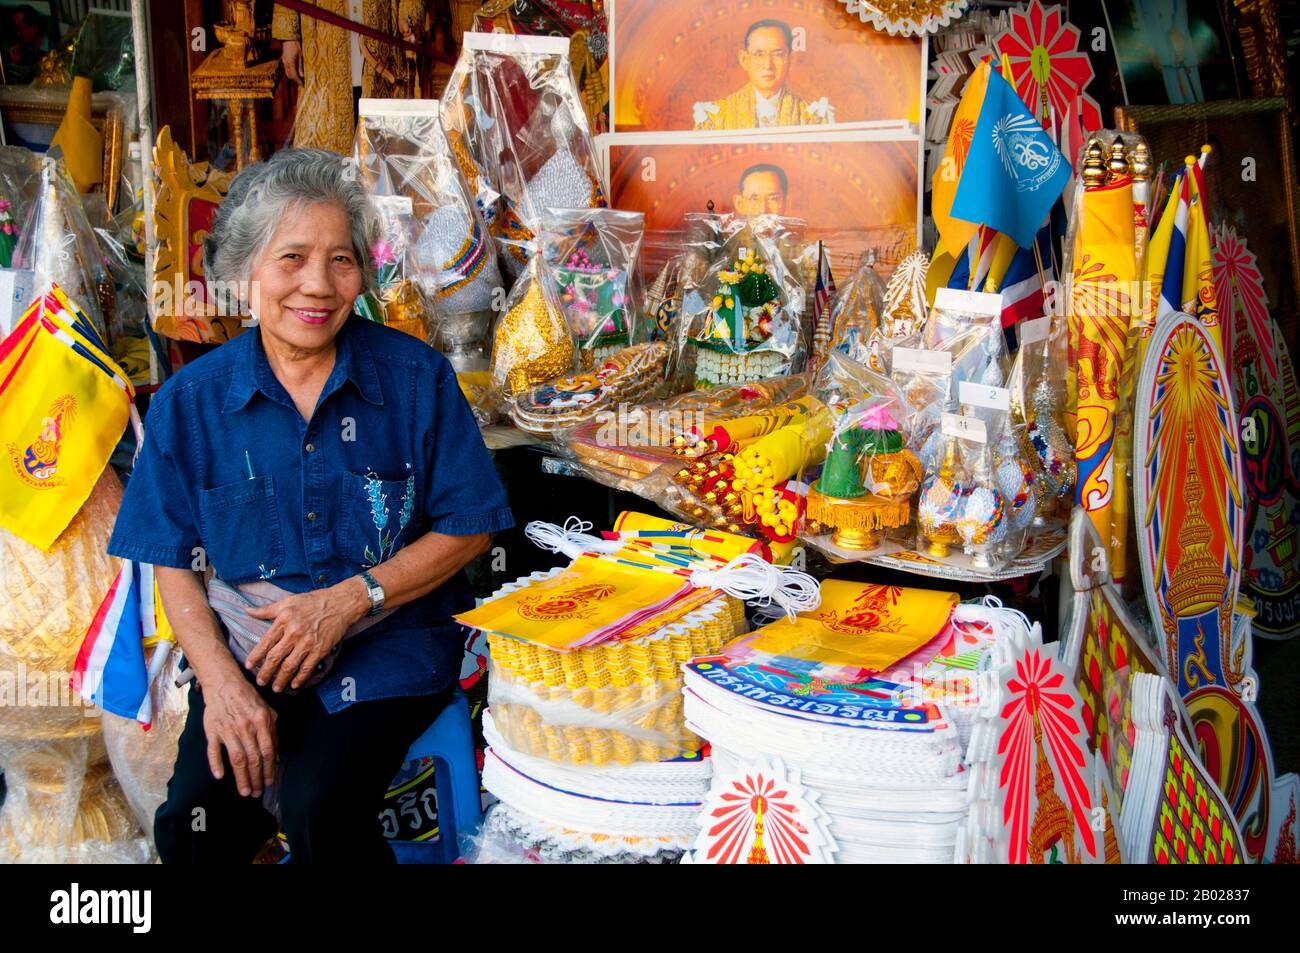 Thaïlande: Une femme thaïlandaise vend des paraphérnalia royales, y compris des drapeaux royaux jaunes pour le roi Bhumibol (Rama IX) à Banglamphu, Bangkok. Bhumibol Adulyadej (Phumiphon Adunyadet; 5 décembre 1927 - 13 octobre 2016) était le roi de Thaïlande. Il était connu sous le nom de Rama IX (et au sein de la famille royale thaïlandaise et de proches associés simplement comme Lek. Ayant régné à partir du 9 juin 1946, il était le monarque le plus long de l'histoire thaïlandaise. Banque D'Images